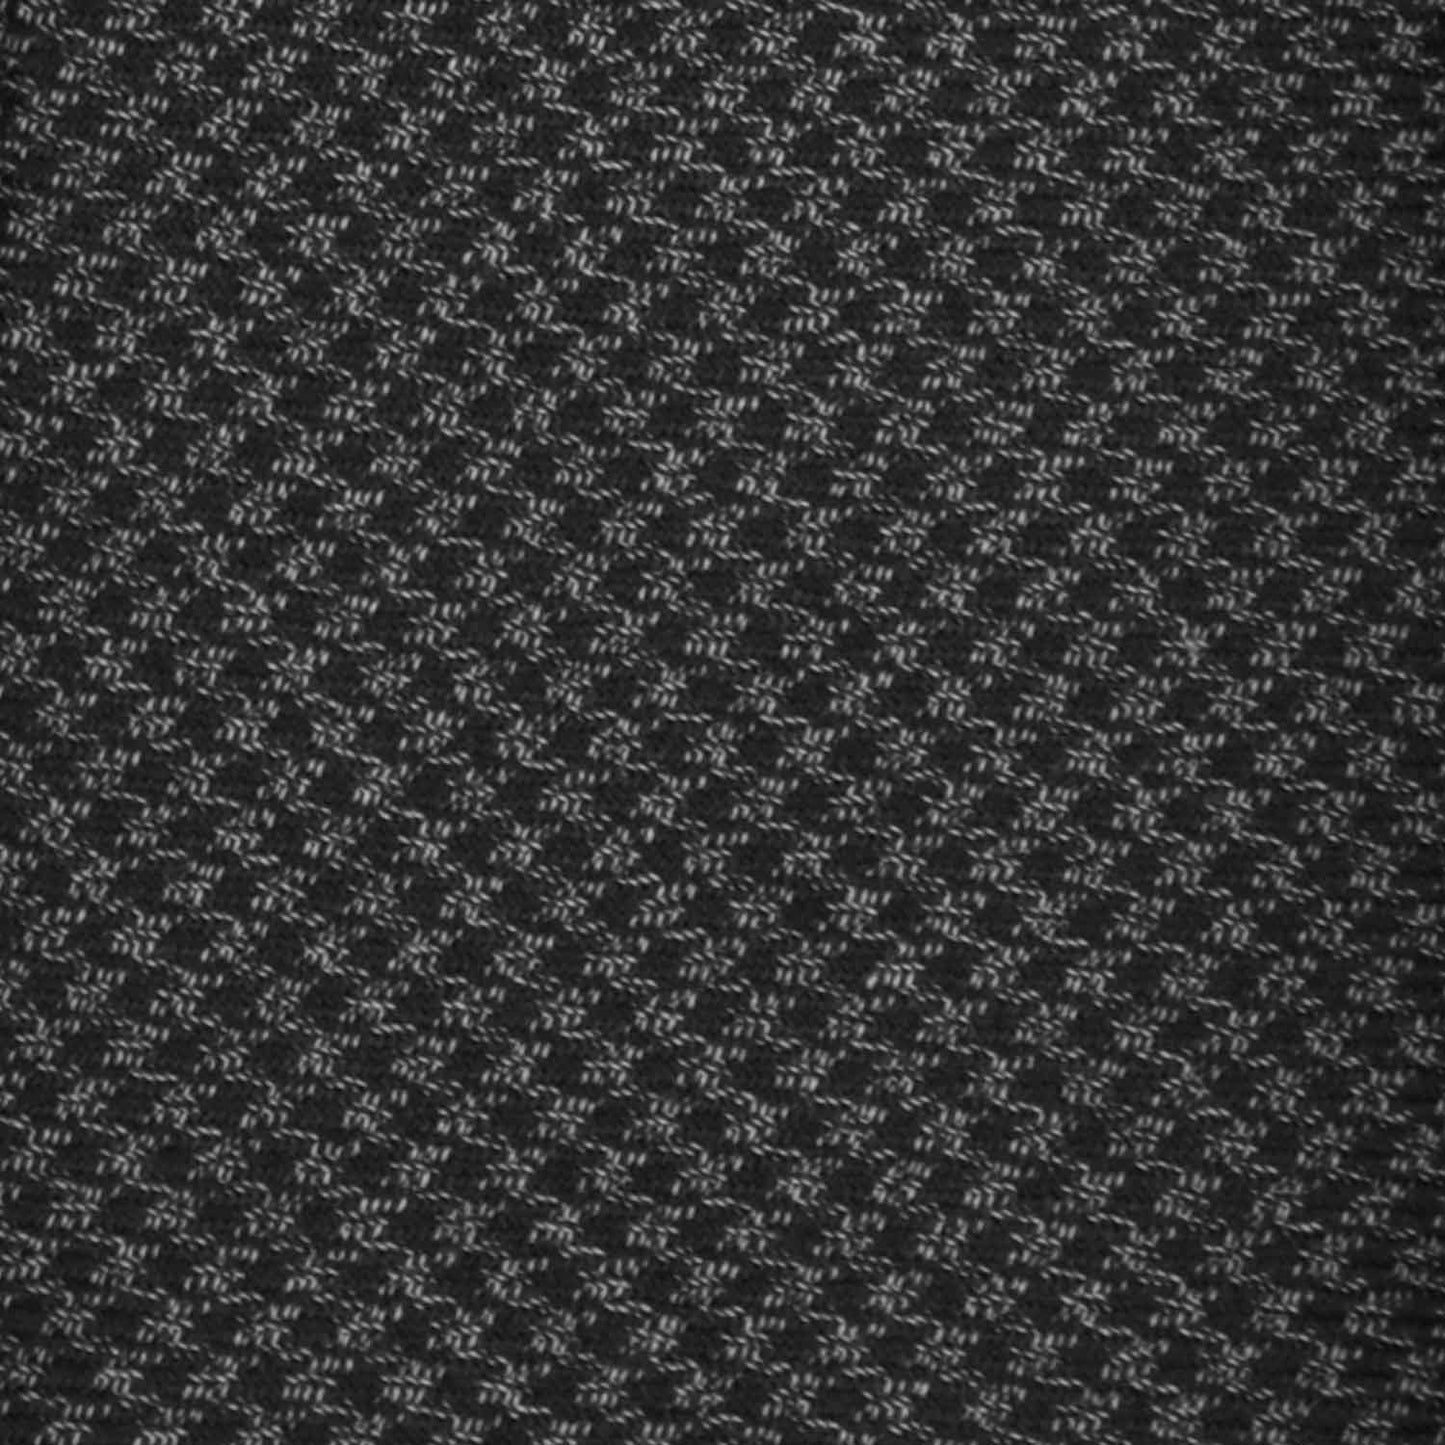 Grey Wool Tie Pied de Poule. Elegant pied de poule wool tie, smoke and anthracite grey pied-de-poule pattern